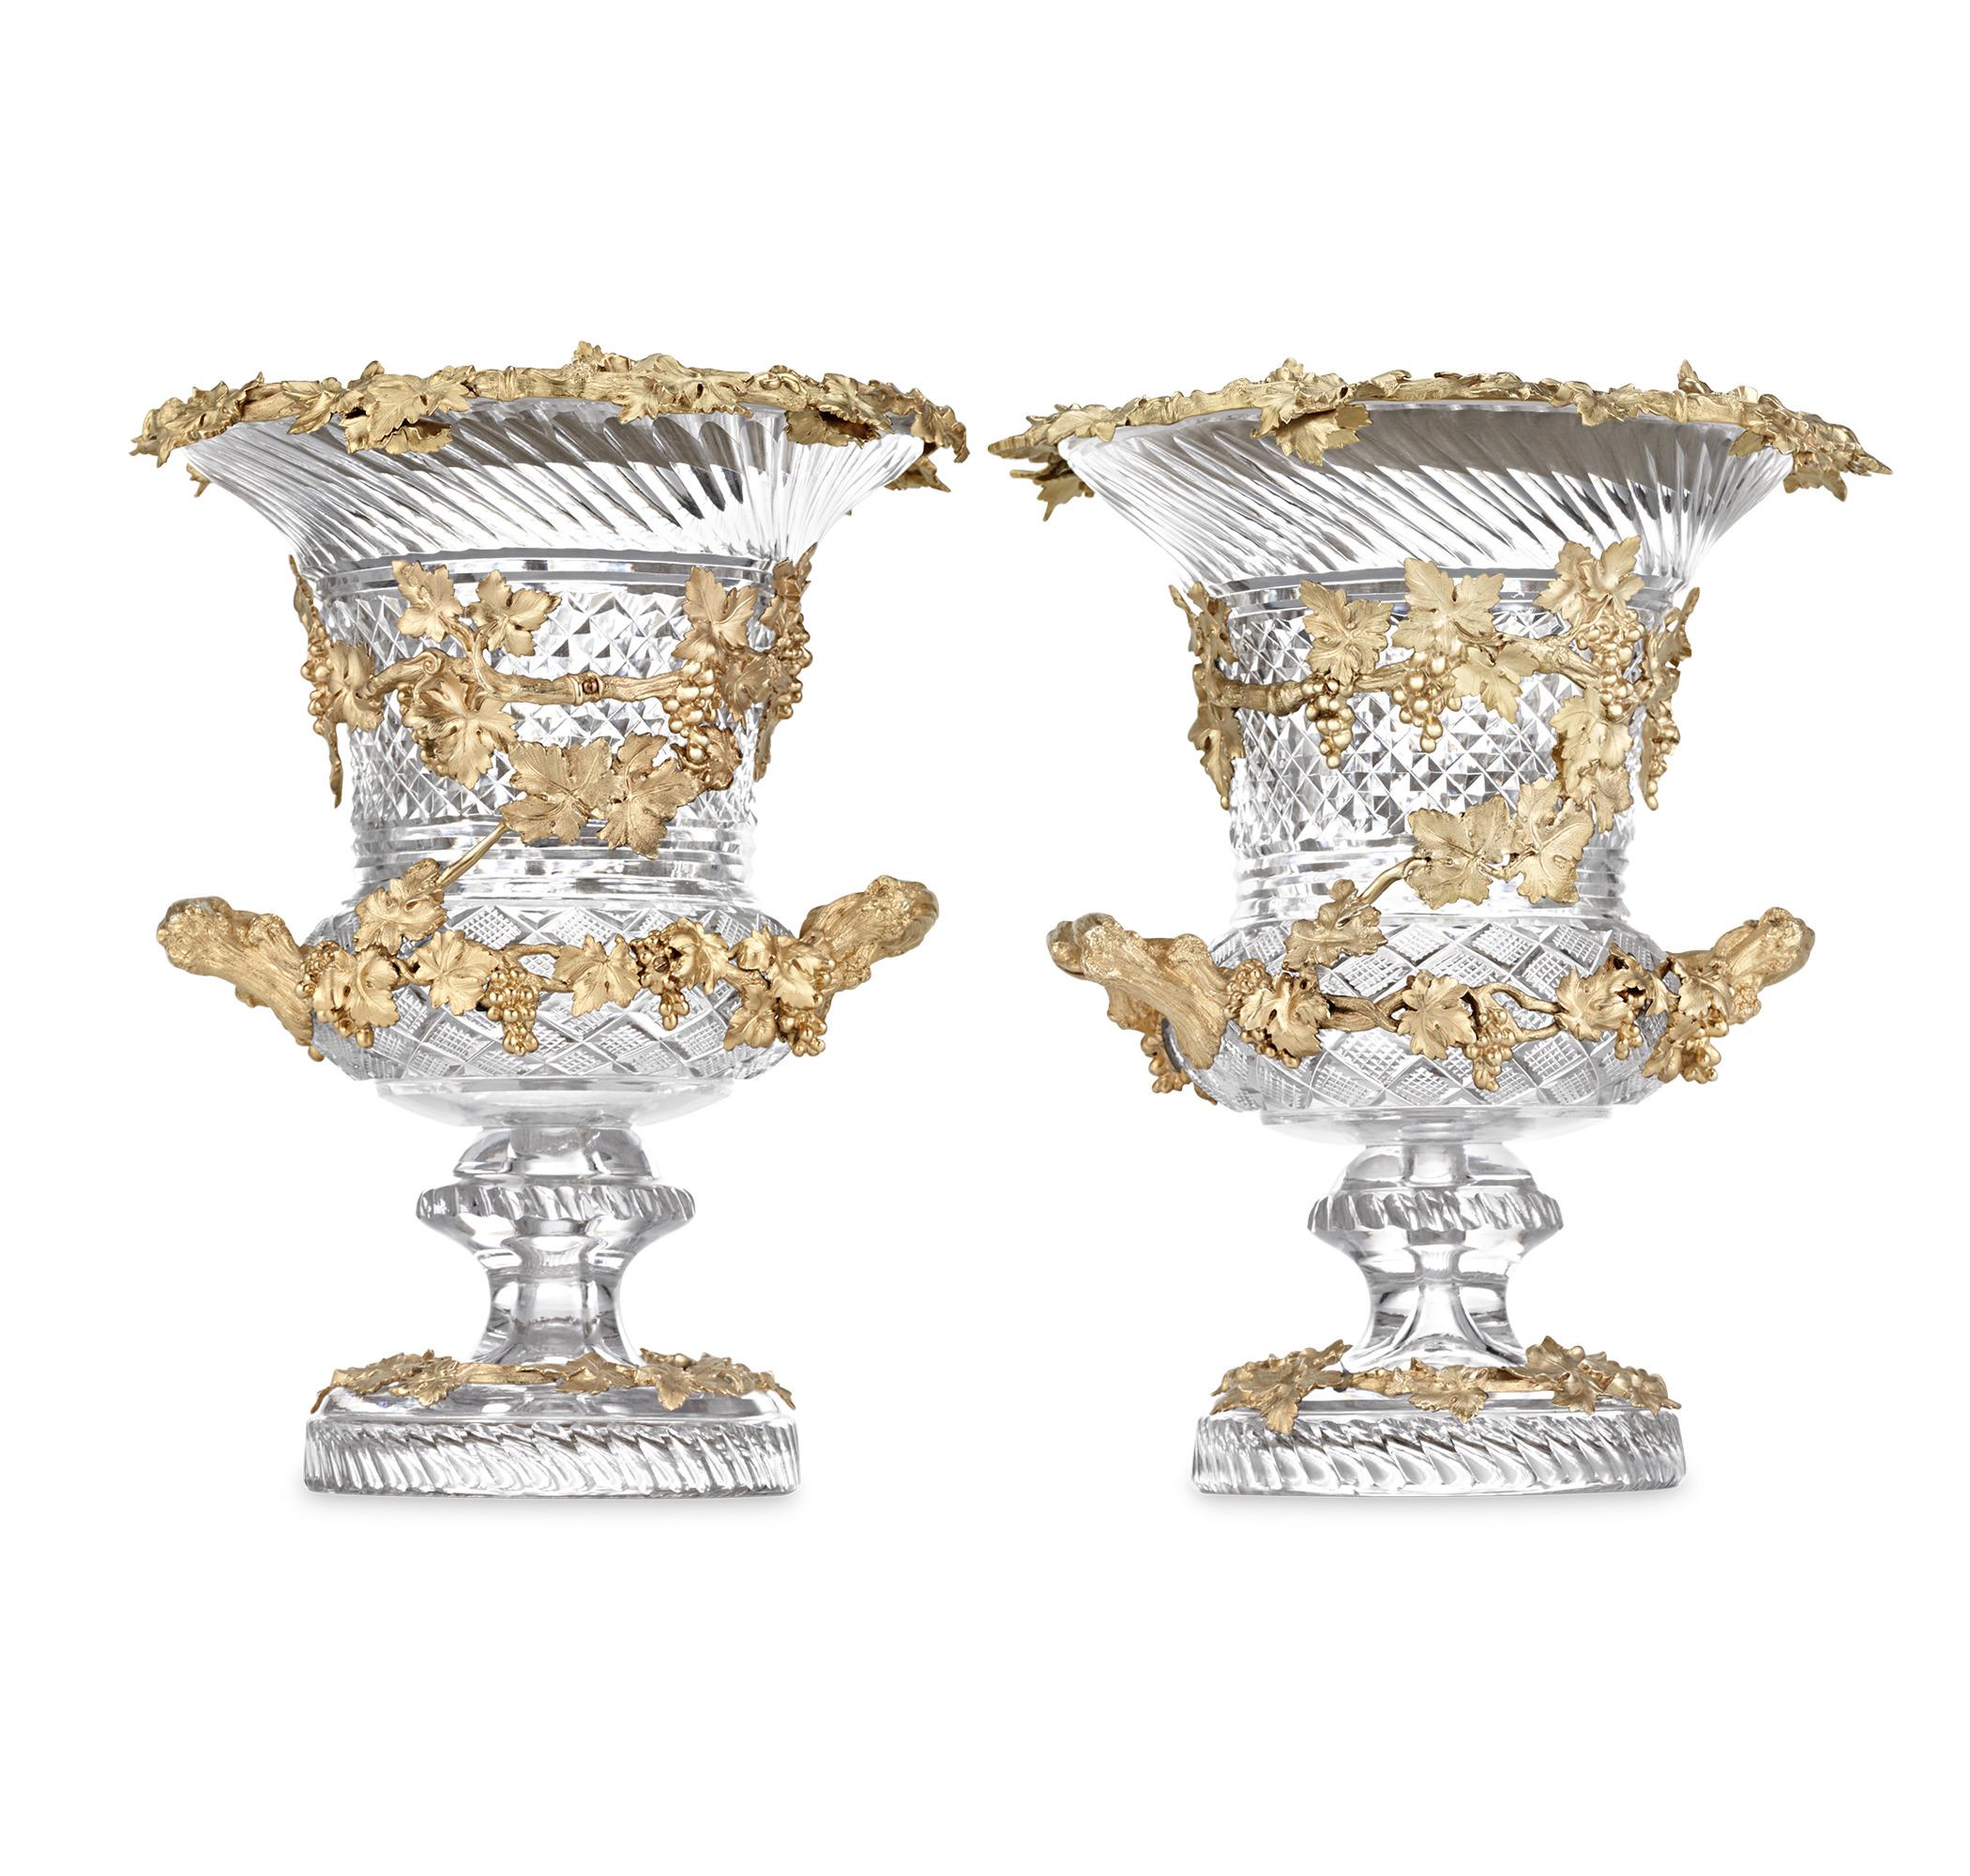 Diese außergewöhnlich seltenen Weinkühler aus Glas und vergoldetem Silber von Hunt & Roskell, die ausschließlich den Wohlhabendsten der Epoche vorbehalten waren, verkörpern den Höhepunkt von Grandeur und Luxus in der Mitte des 19. Die Kühler mit